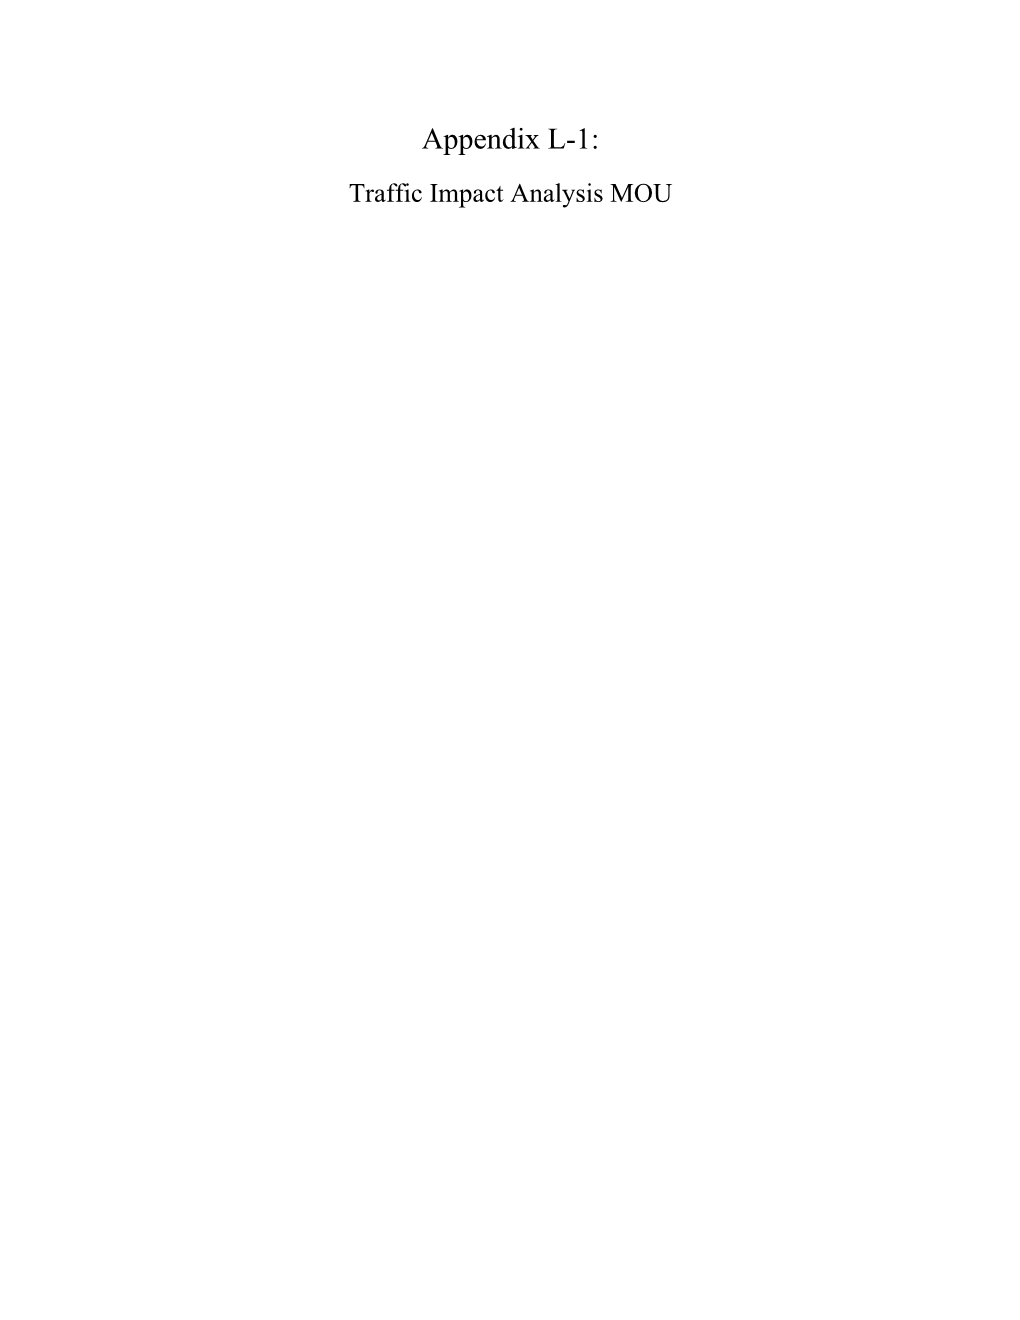 Appendix L-1: Traffic Impact Analysis MOU